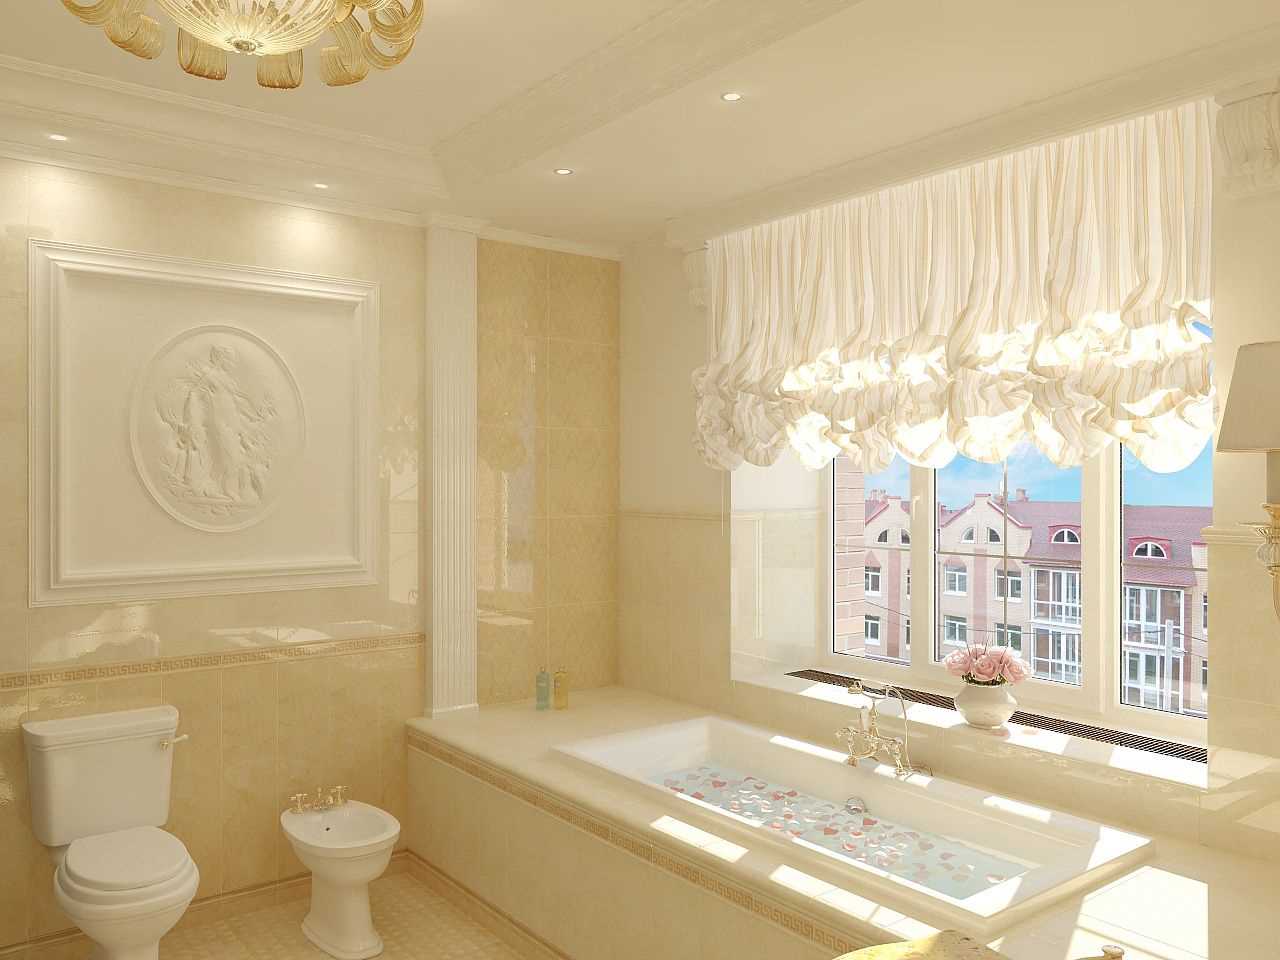 l'idea di un bellissimo design di un bagno con una finestra